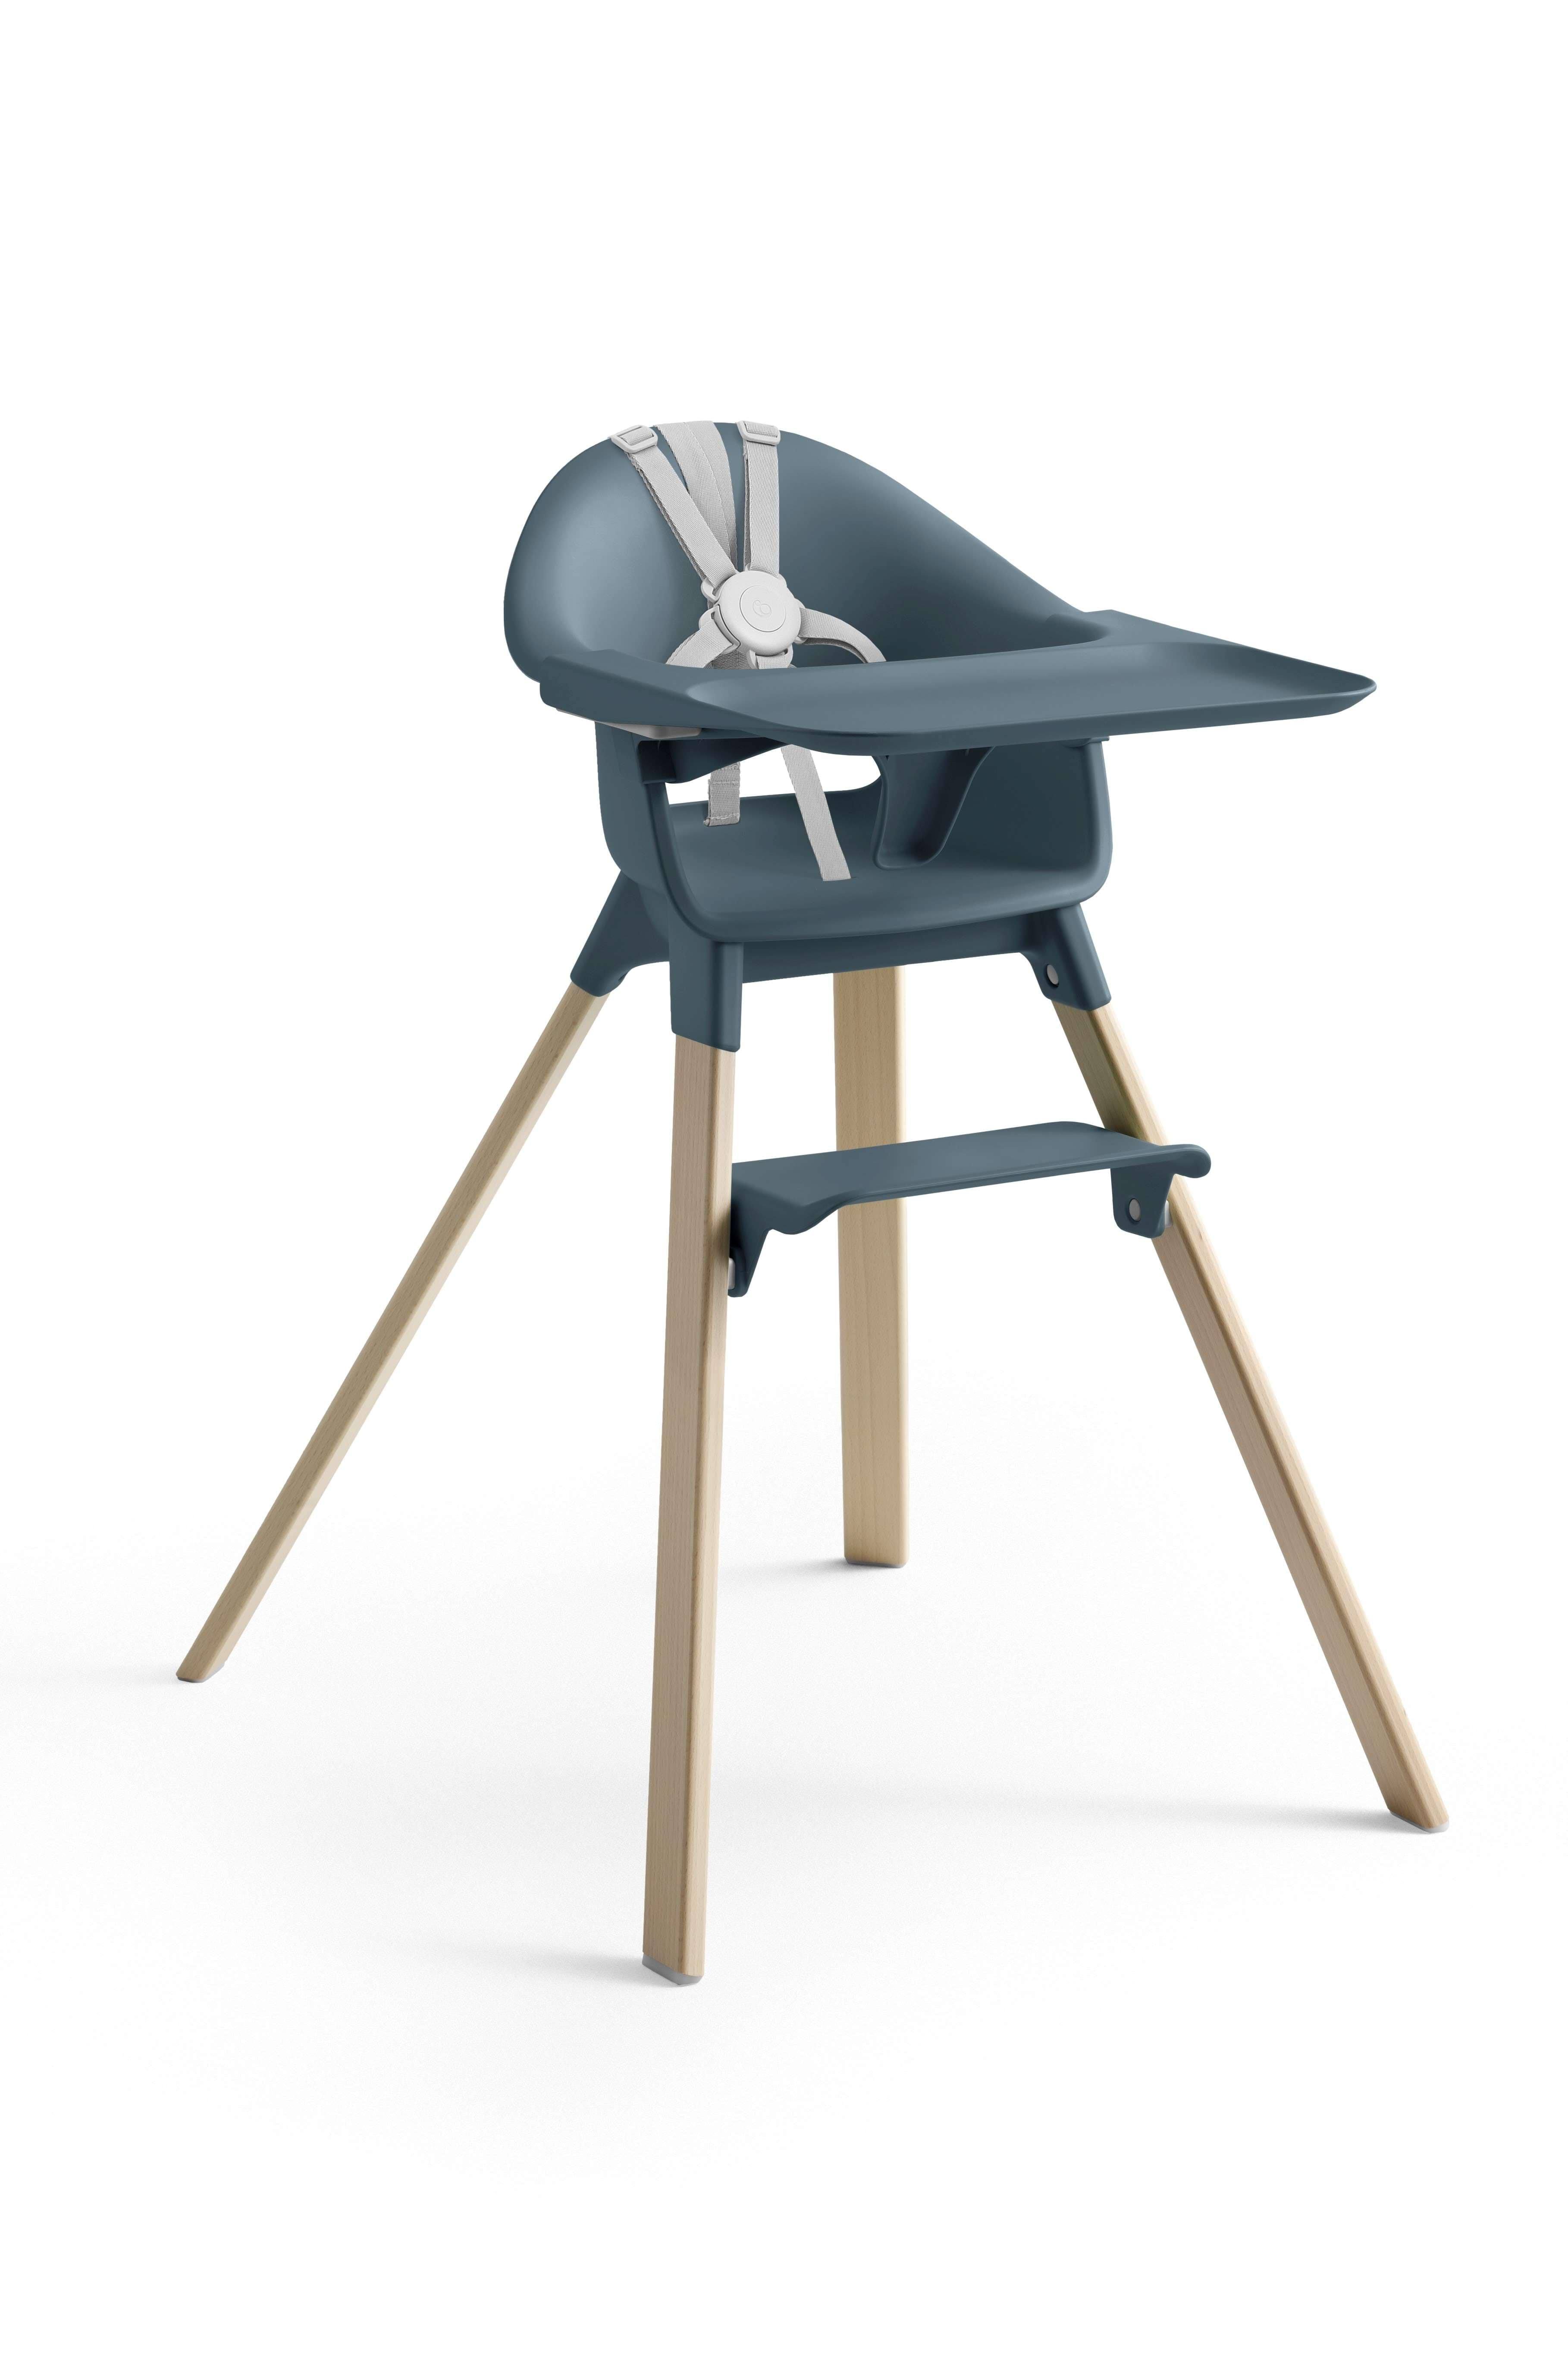 Stokke - Clikk High Chair - Fjord Blue